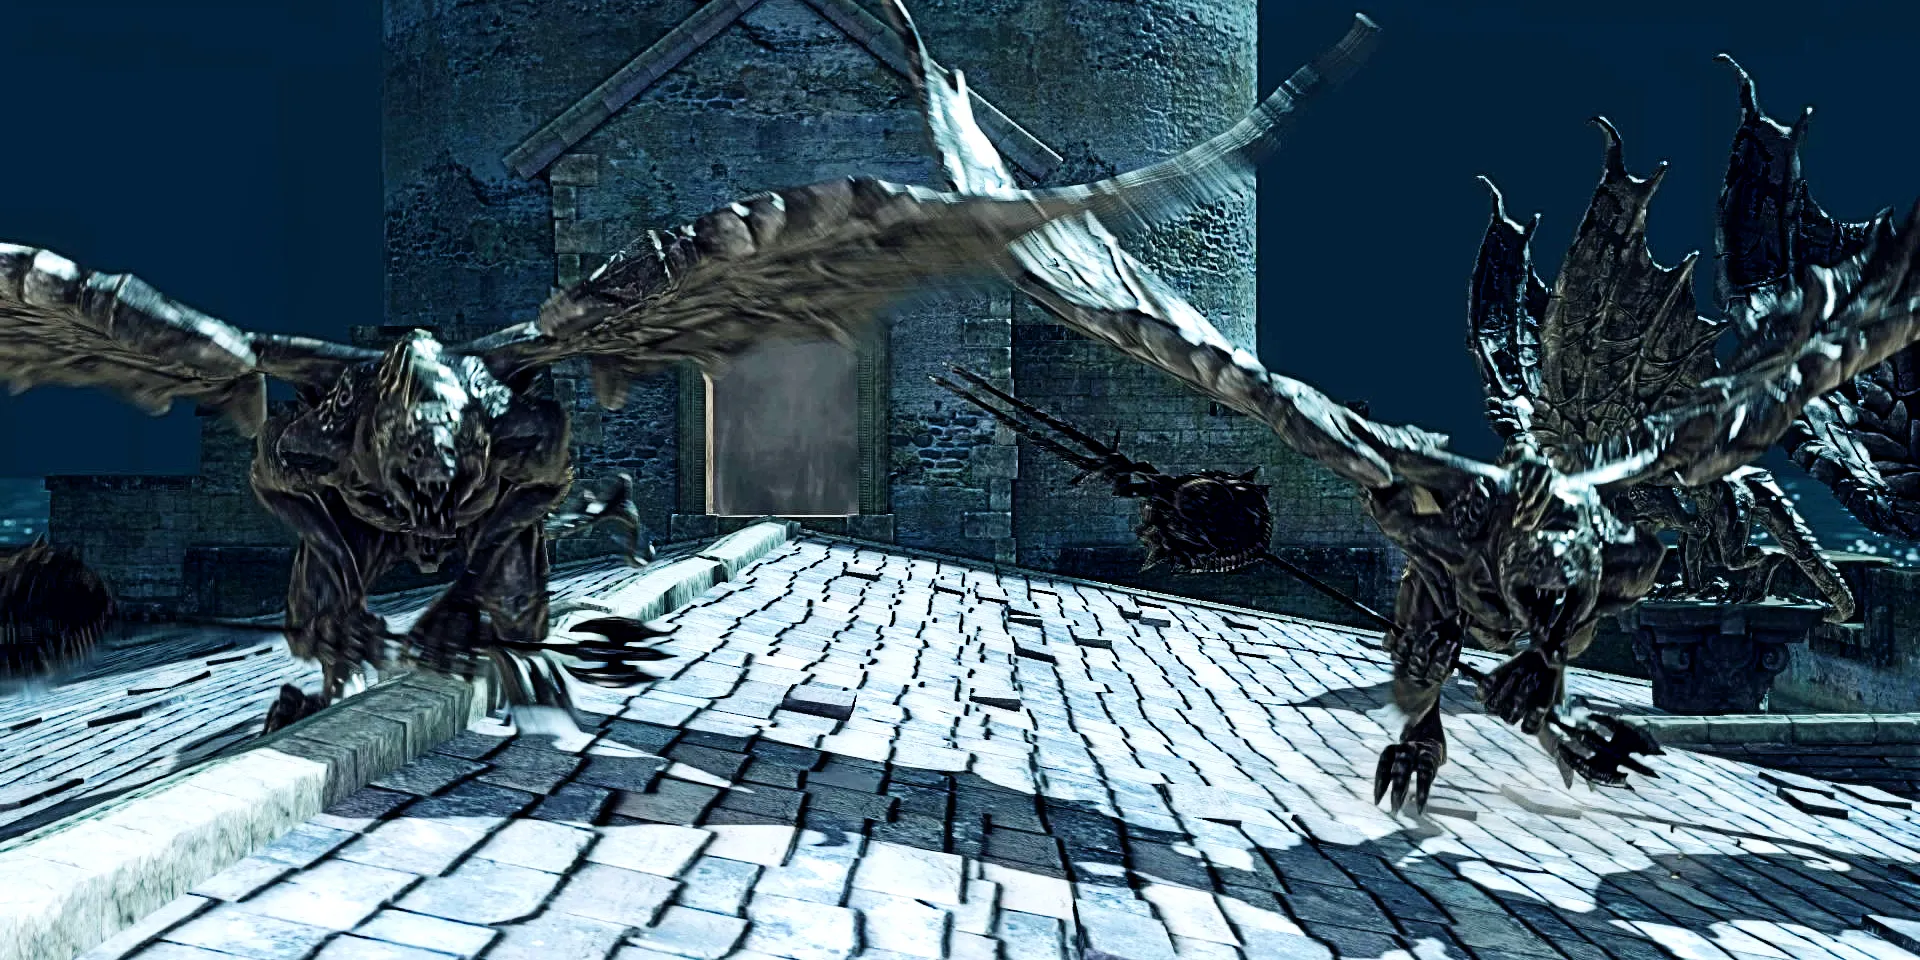 Gargoyles no telhado à noite em Dark Souls 2